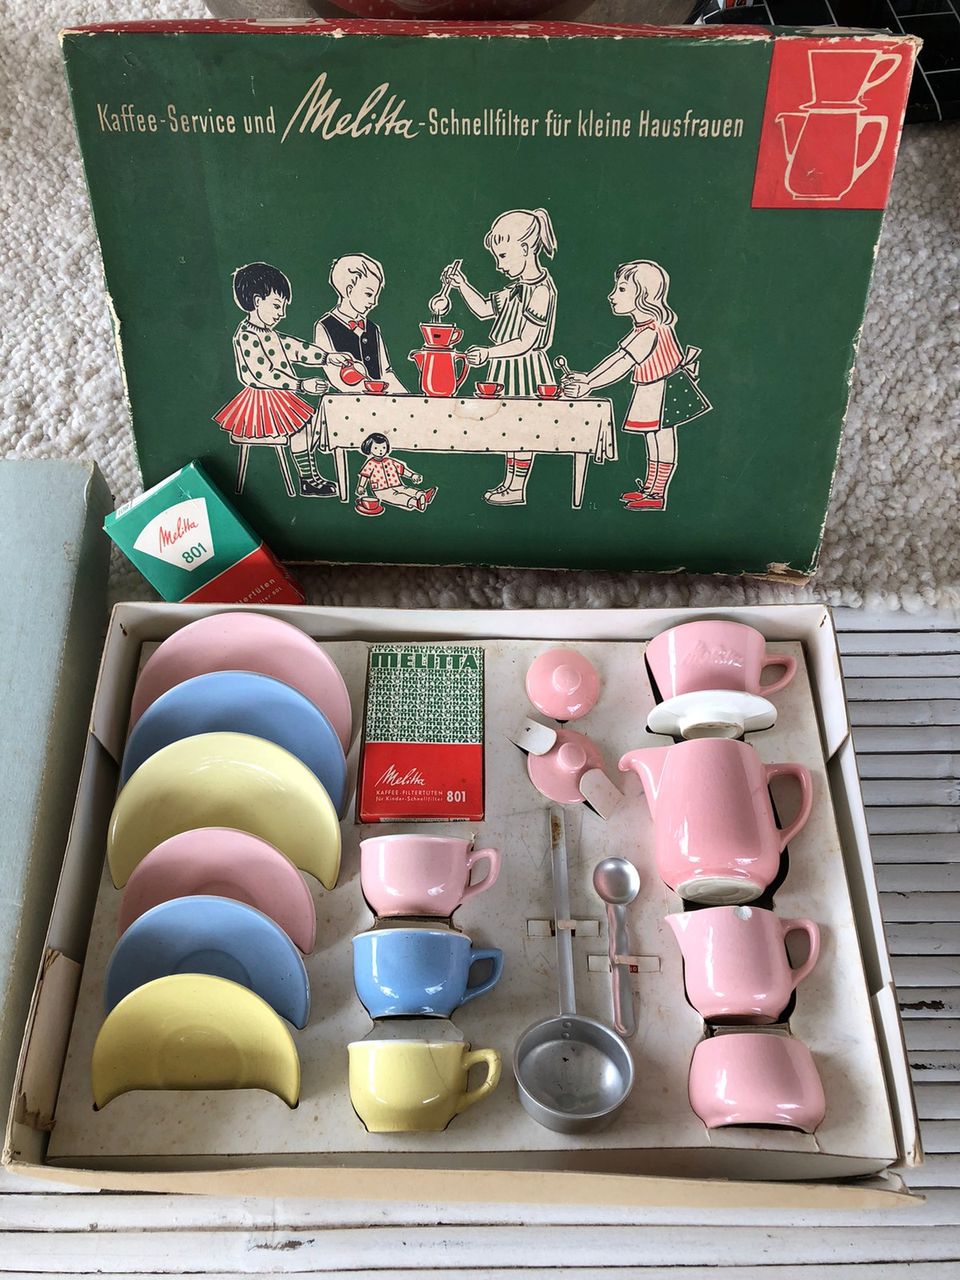 Keraamiset lasten astiat 1940 luvulta